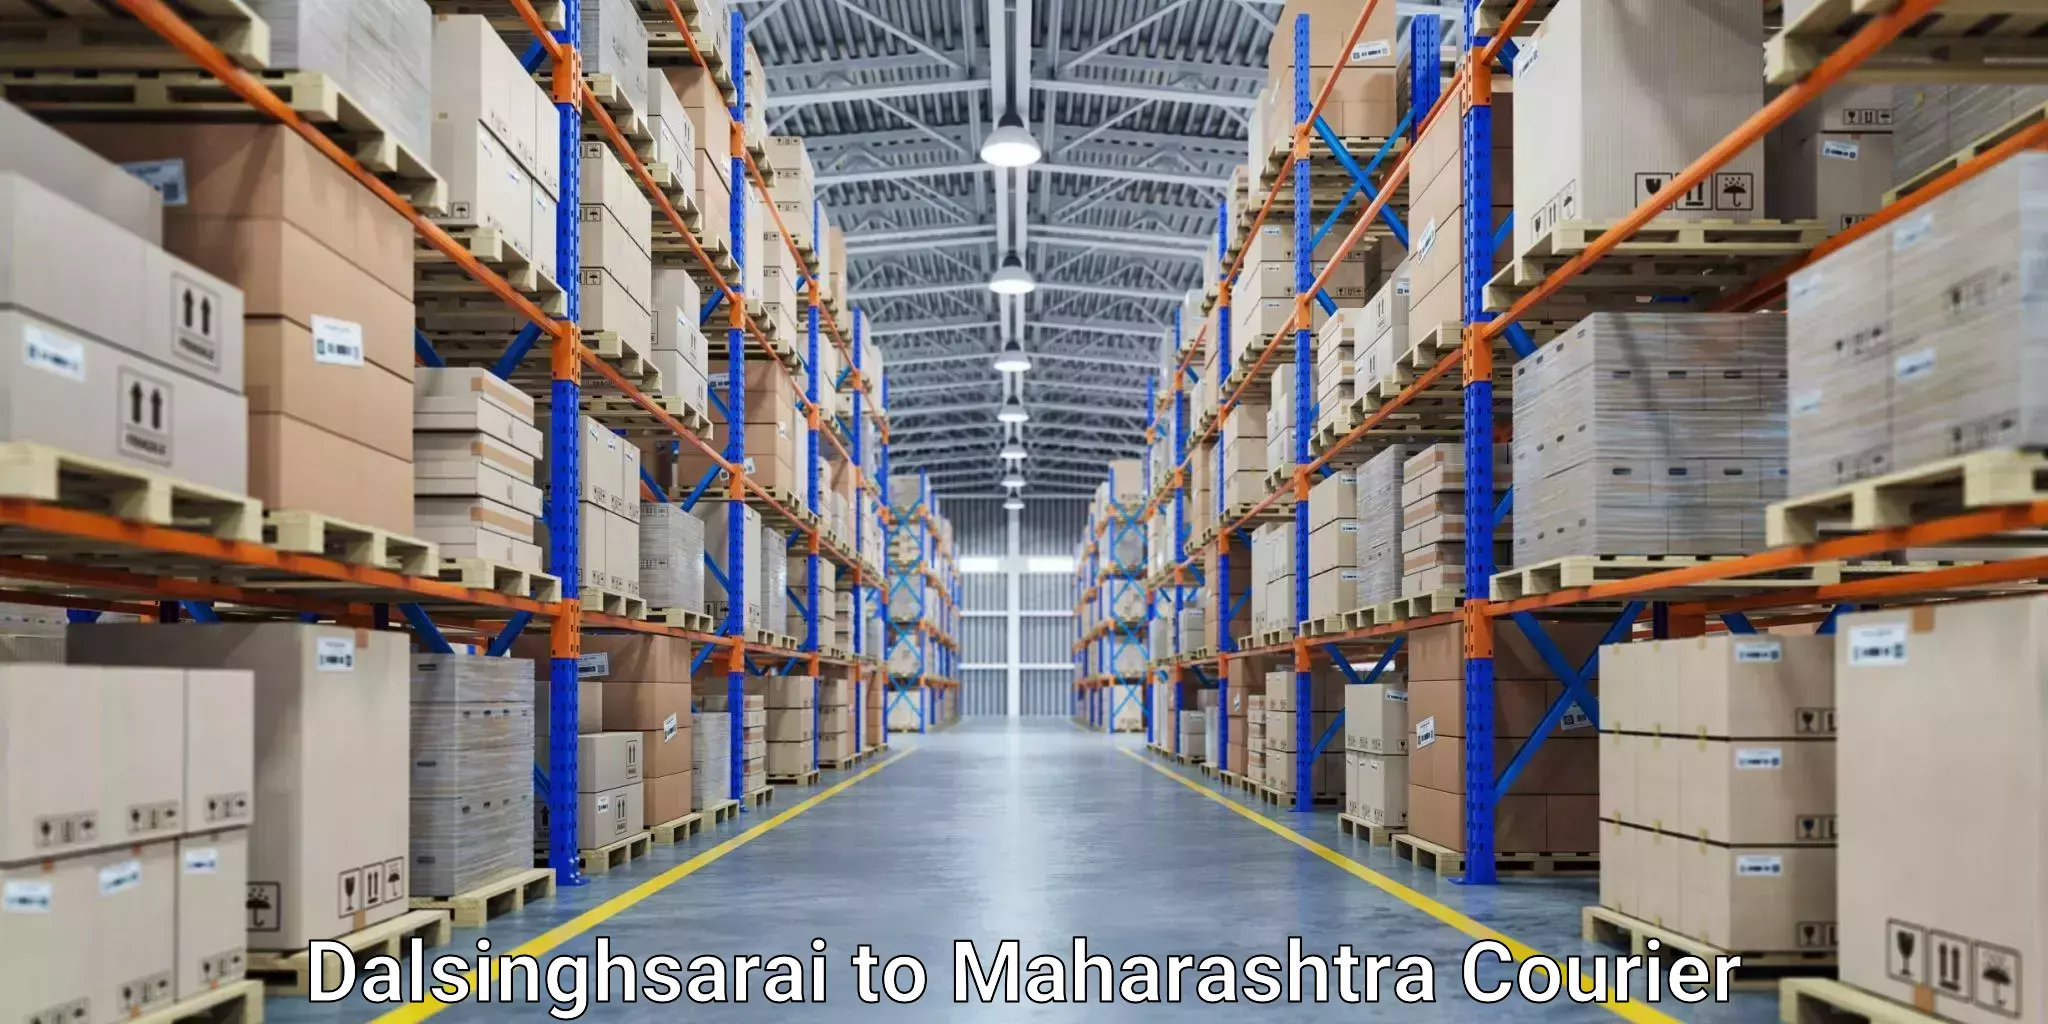 Smart shipping technology Dalsinghsarai to Vita